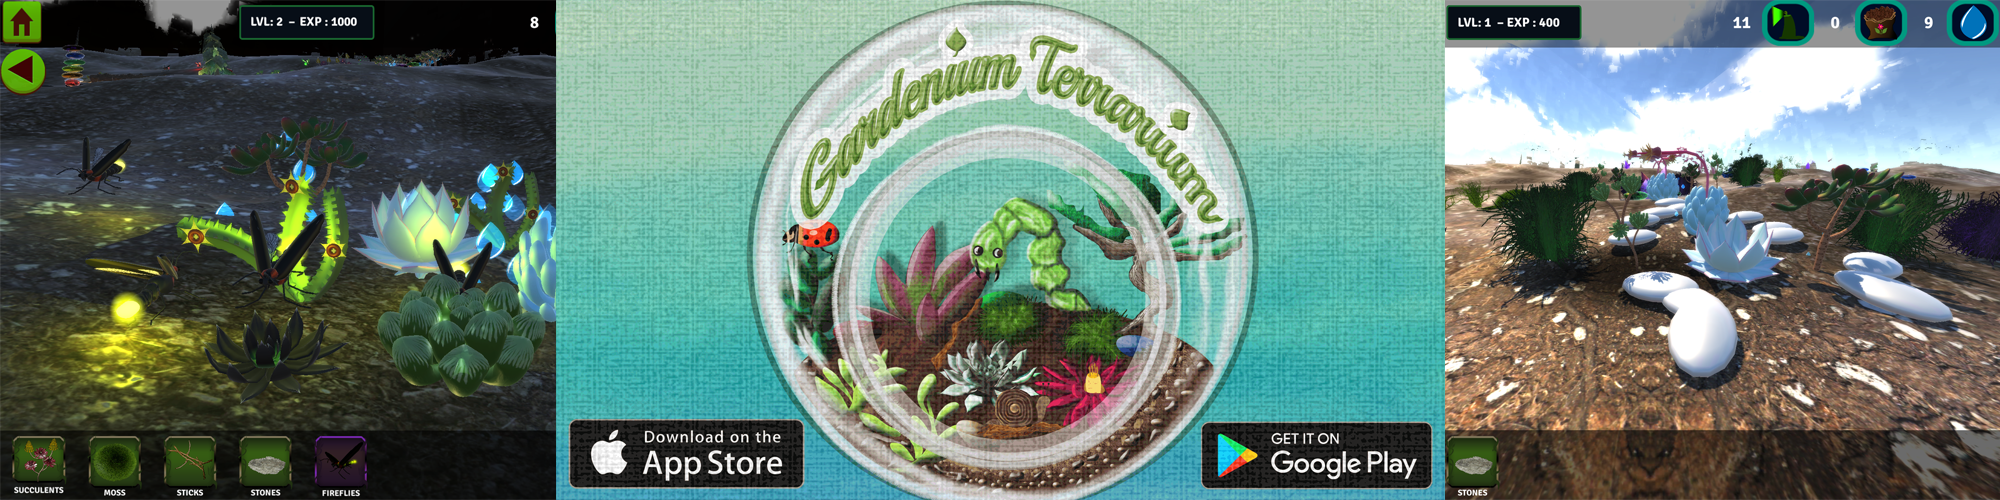 Gardenium Terrarium